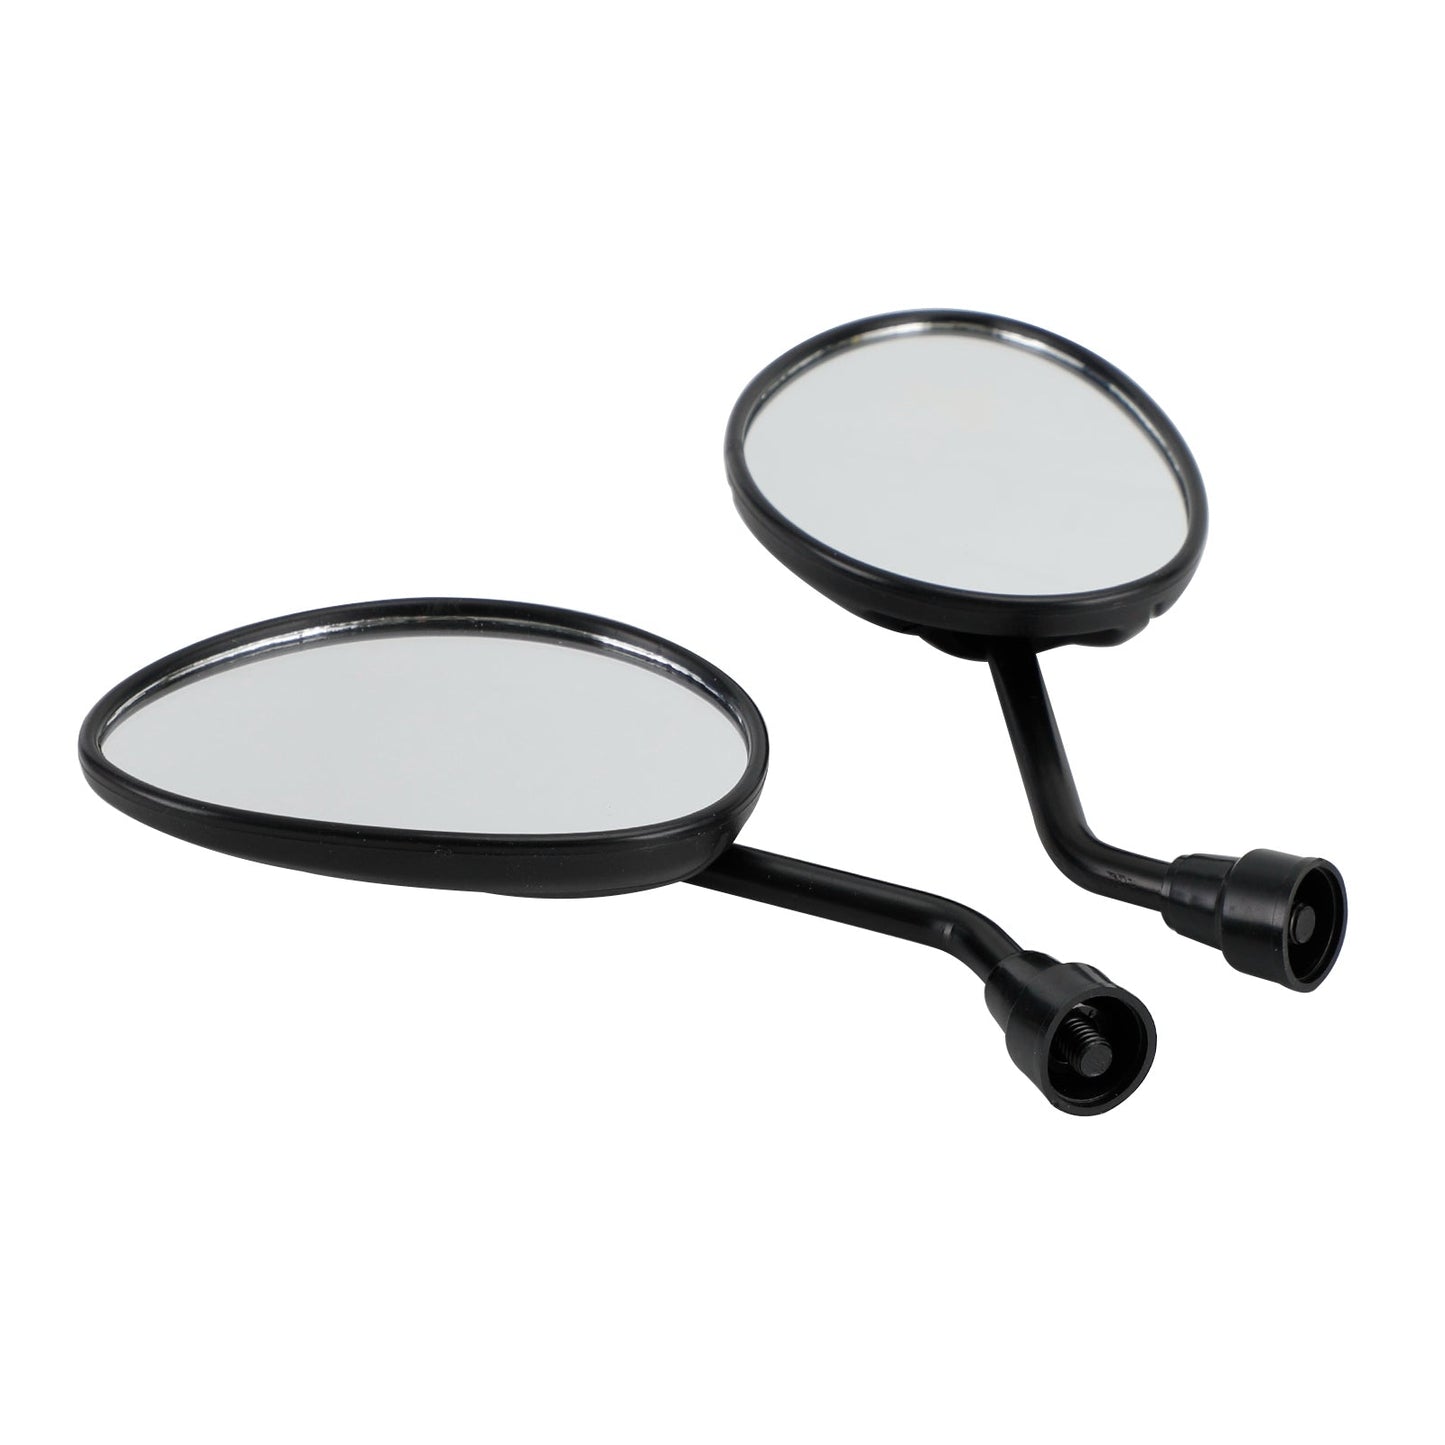 Piaggio ZIP 2T 4T 50 SP Zip 100 125 2000-2014 Pair of Mirrors Right & Left